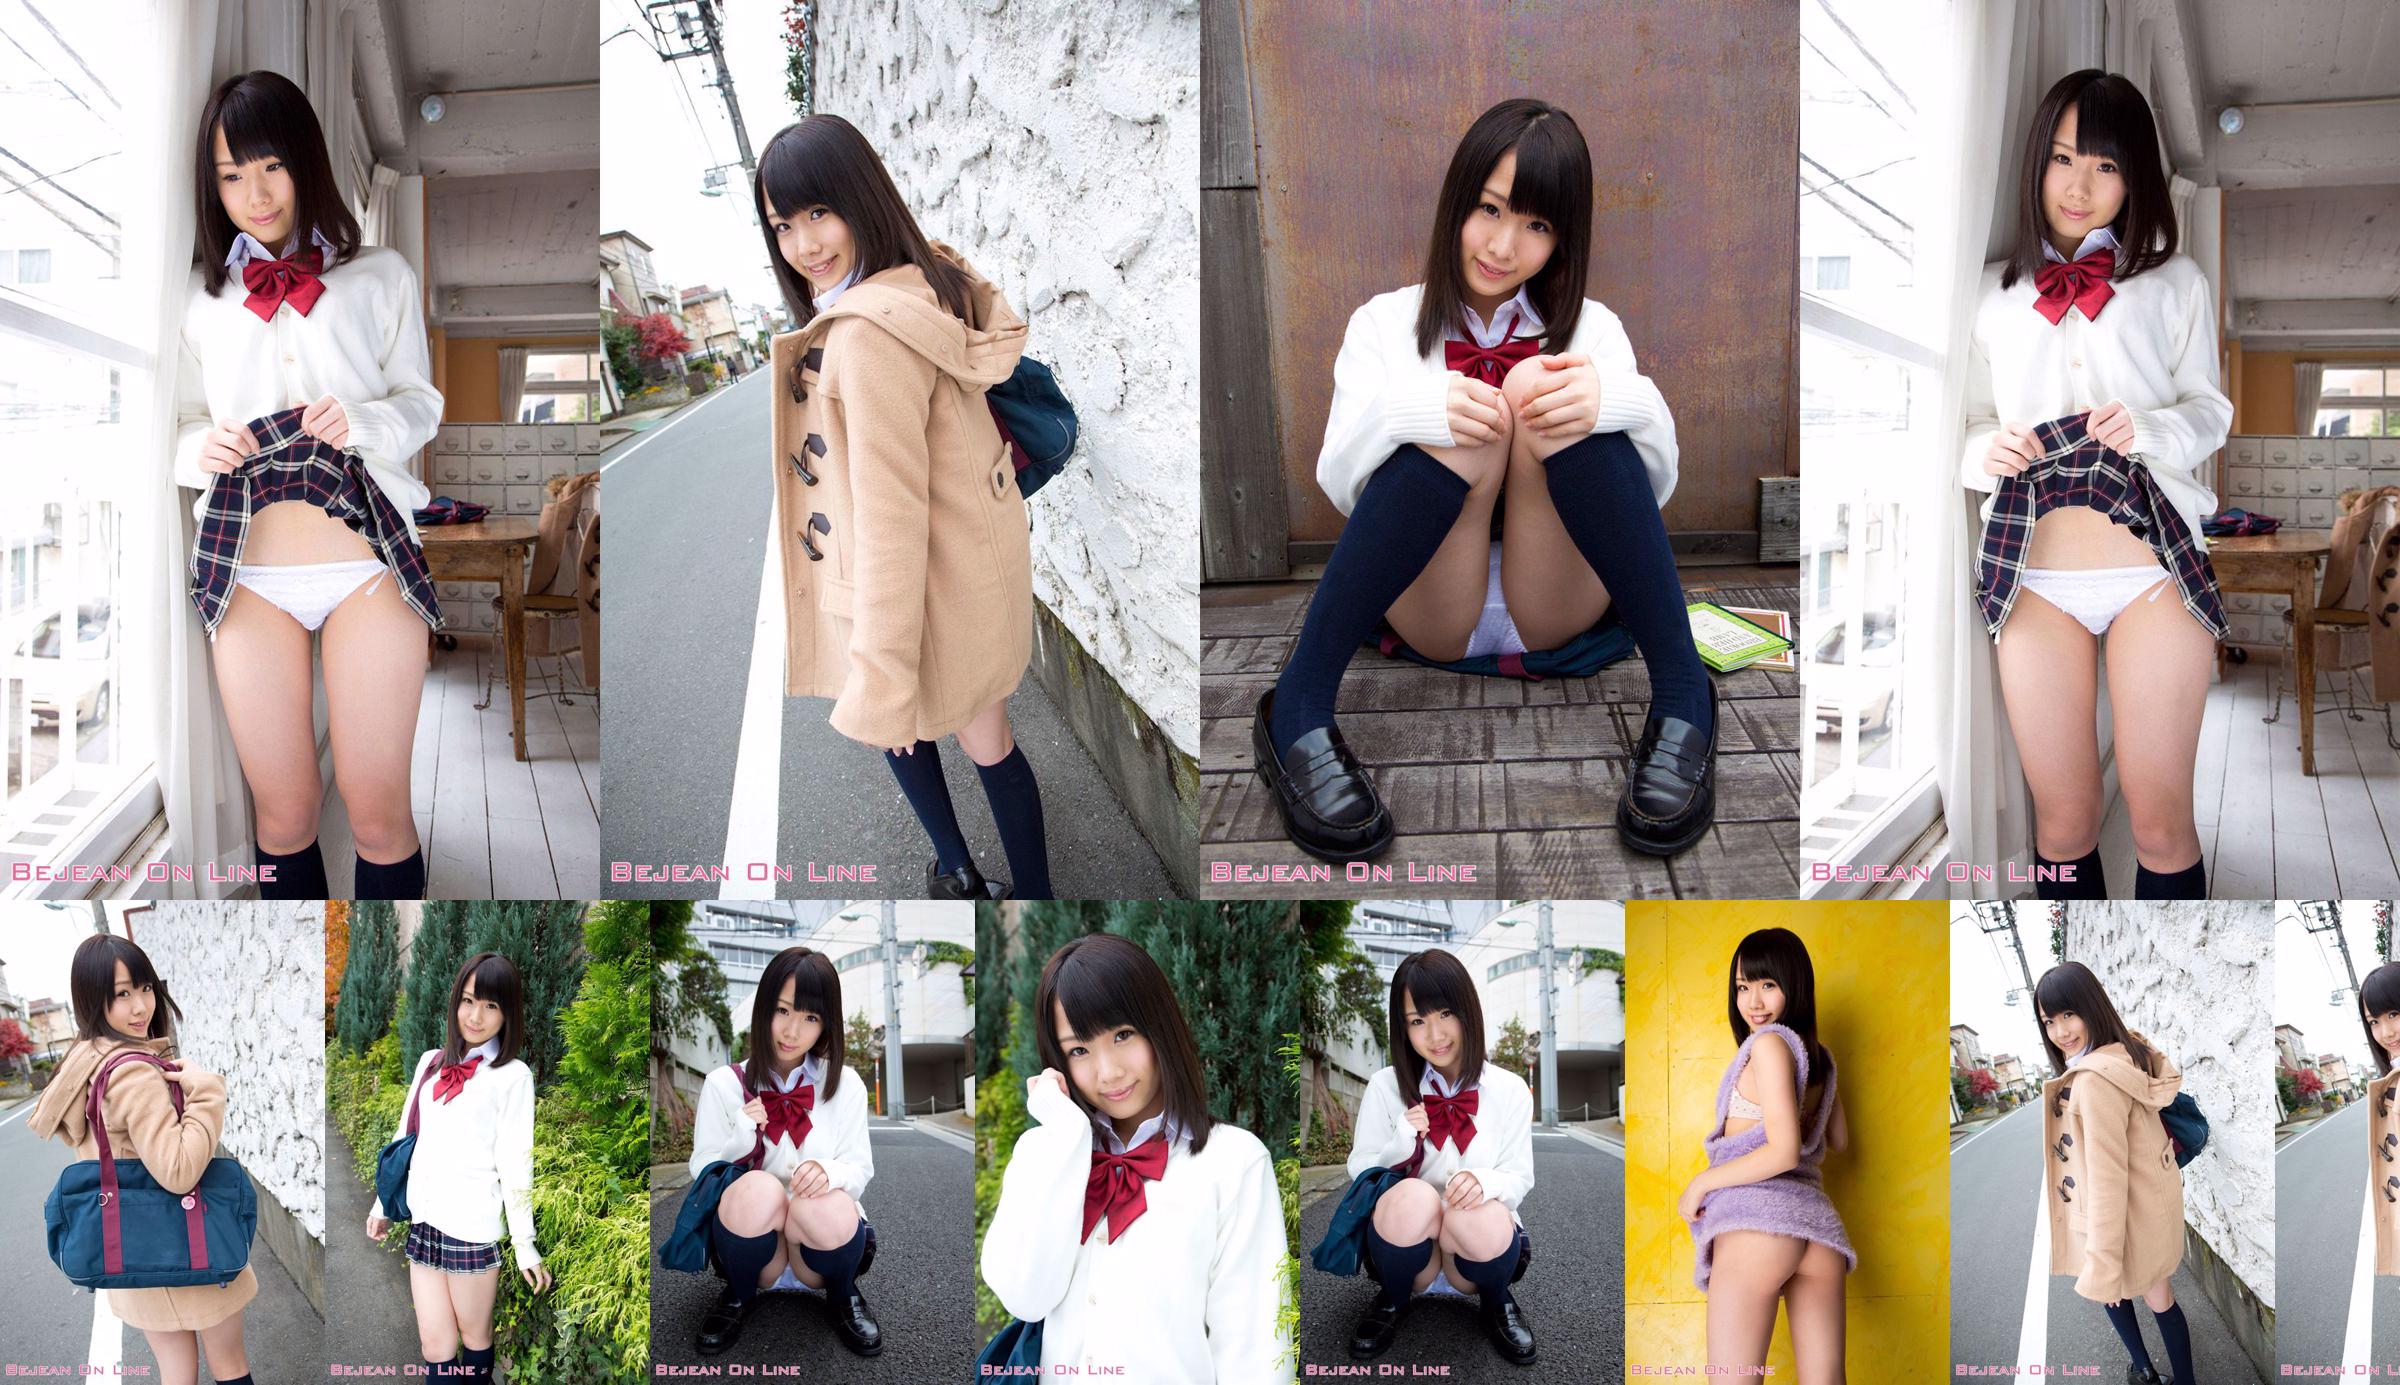 第一照片美女Ami Hyakutake Ami Hyakutake / Ami Hyakutake [Bejean On Line] No.b661fe 第1頁